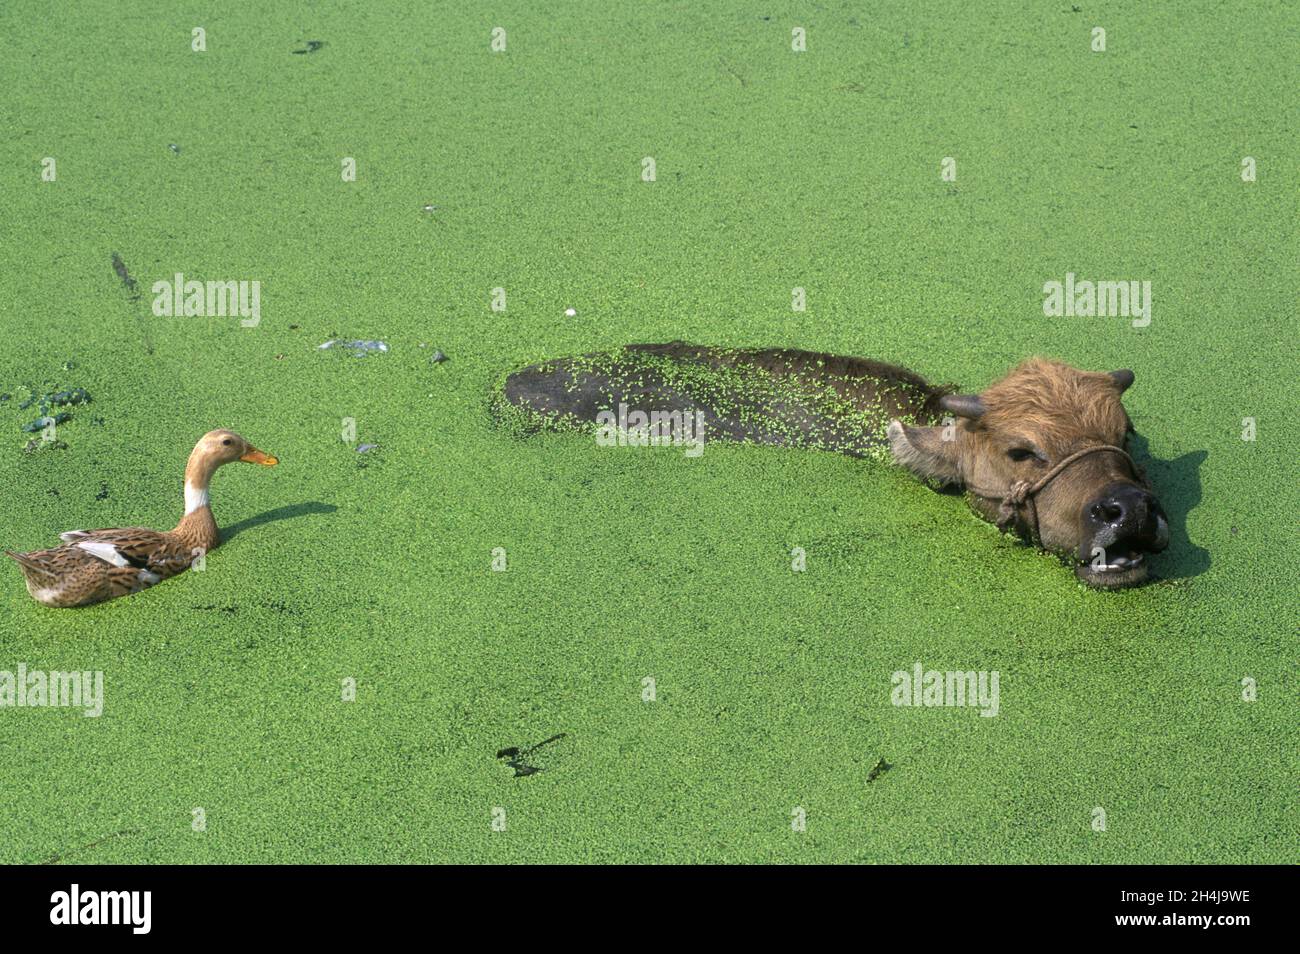 Yiwu, Provinz Zhejiang, China, 2001, 2000er Jahre. Ein Wasserbüffel schwimmt durch Enten, die von einer Ente beobachtet werden, die gekommen ist, um zu sehen, was vor sich geht. Traditionelle Landwirtschaft findet in dieser wohlhabenden Provinz HOMER SYKES statt Stockfoto